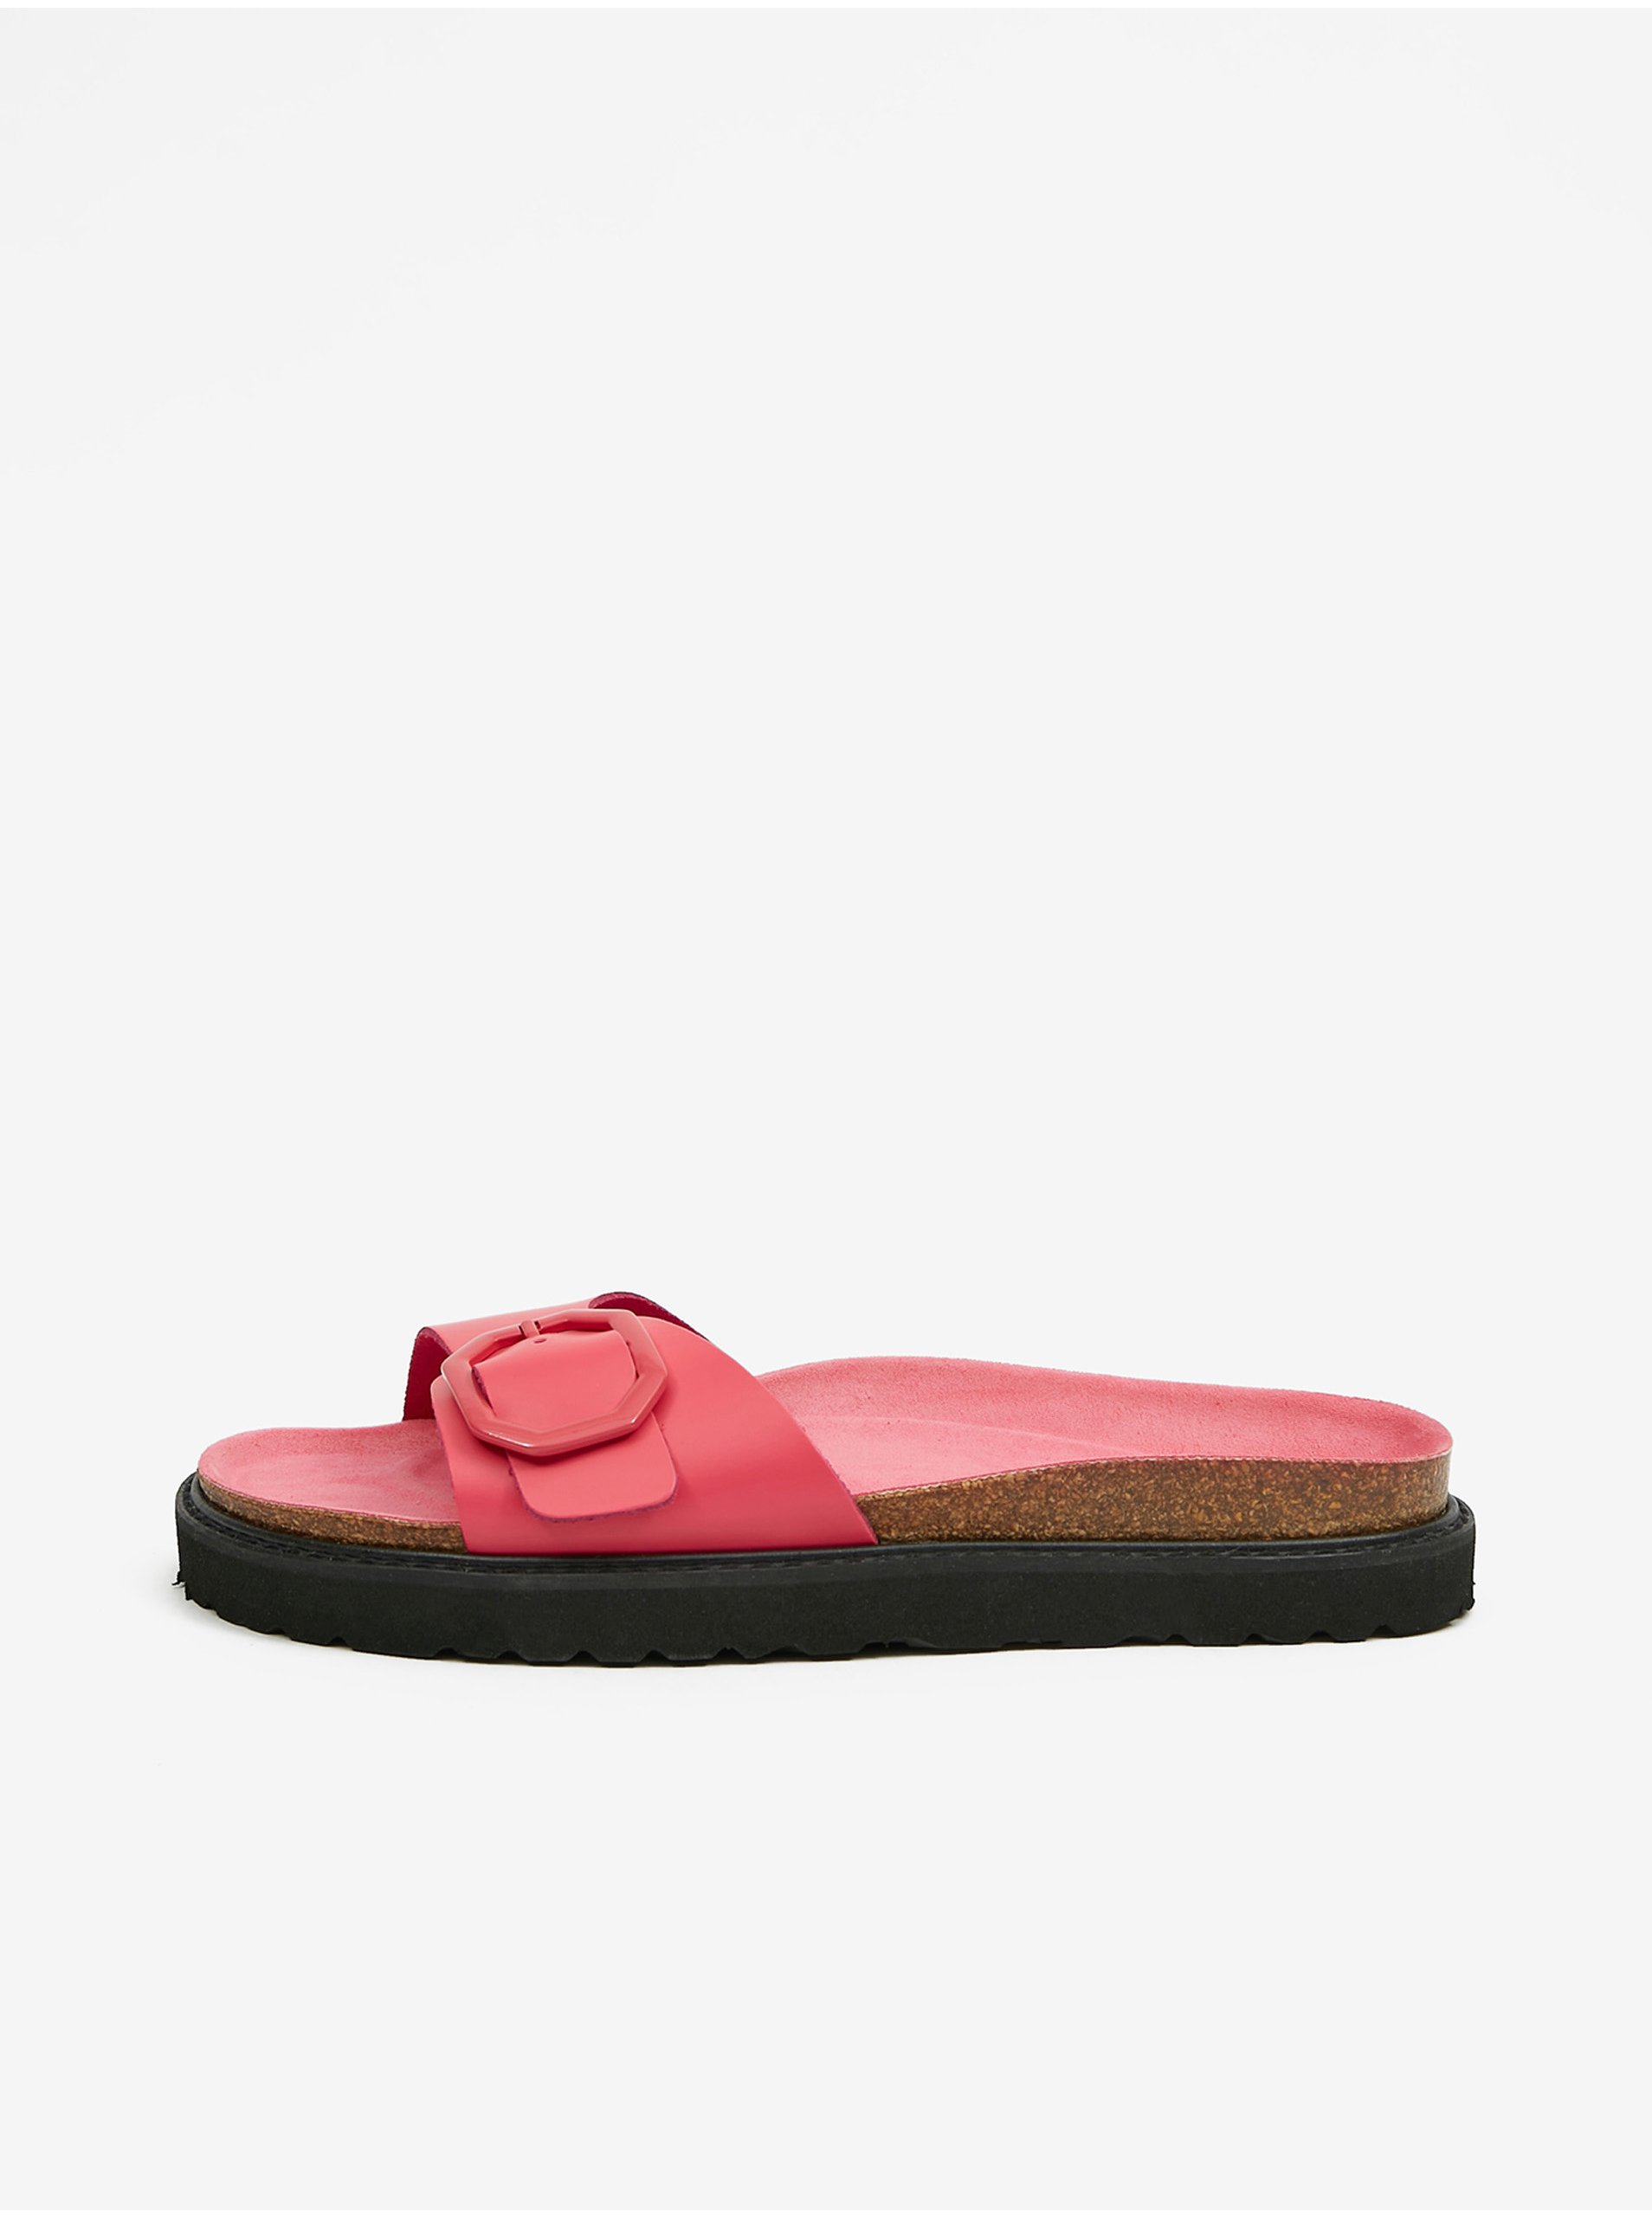 E-shop Růžové dámské kožené pantofle na platformě OJJU